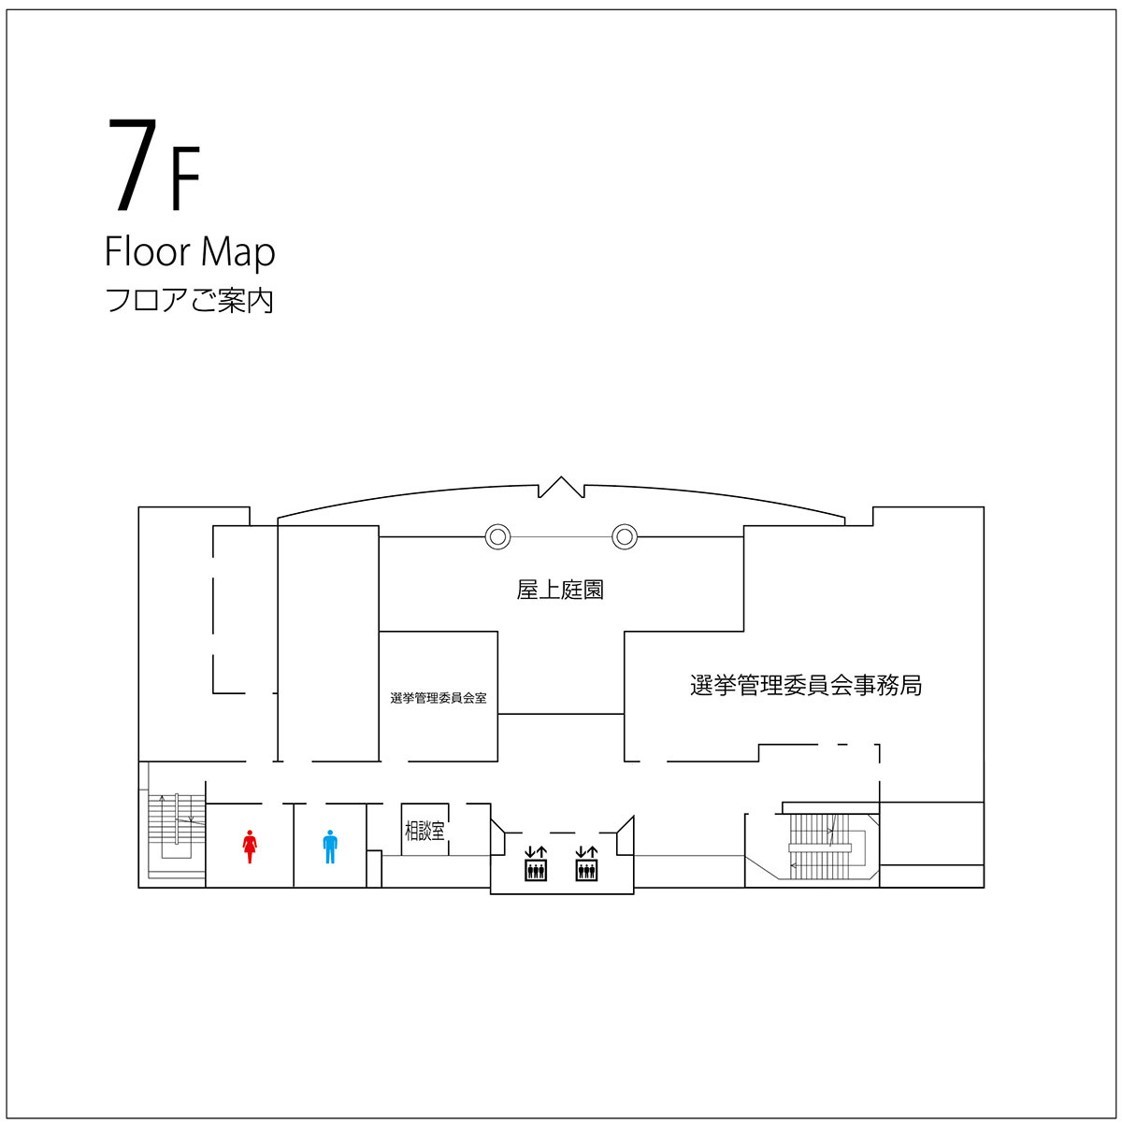 北別館7階フロアマップ図の画像